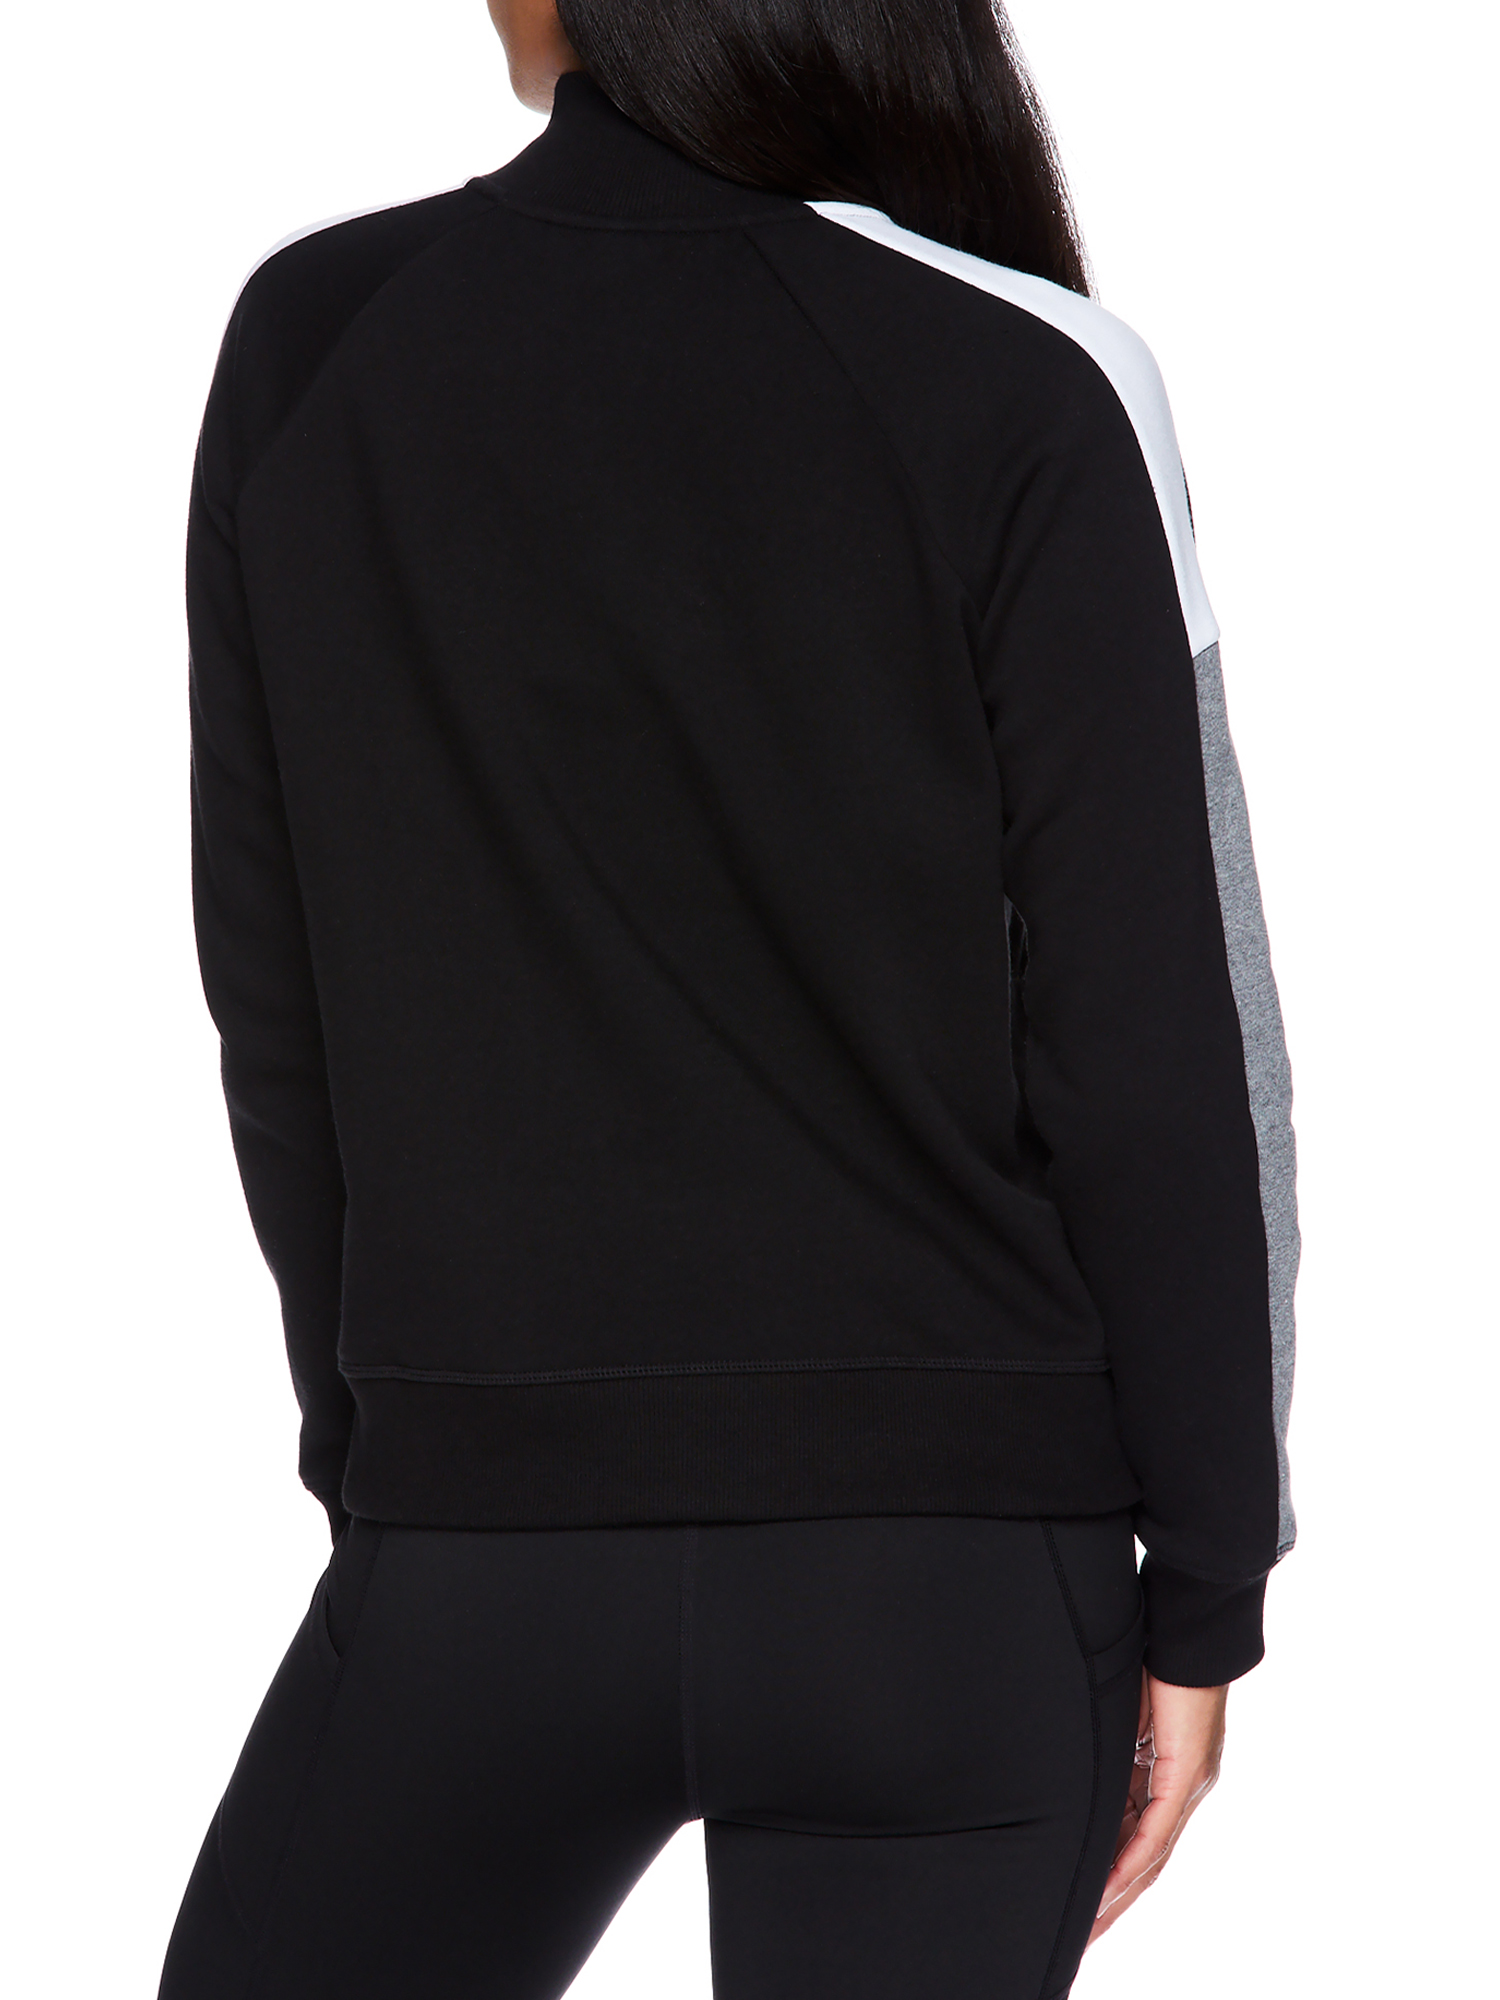 Reebok Women's Color Block Fleece Turtleneck Sweathshirt, Half Zip - image 2 of 4